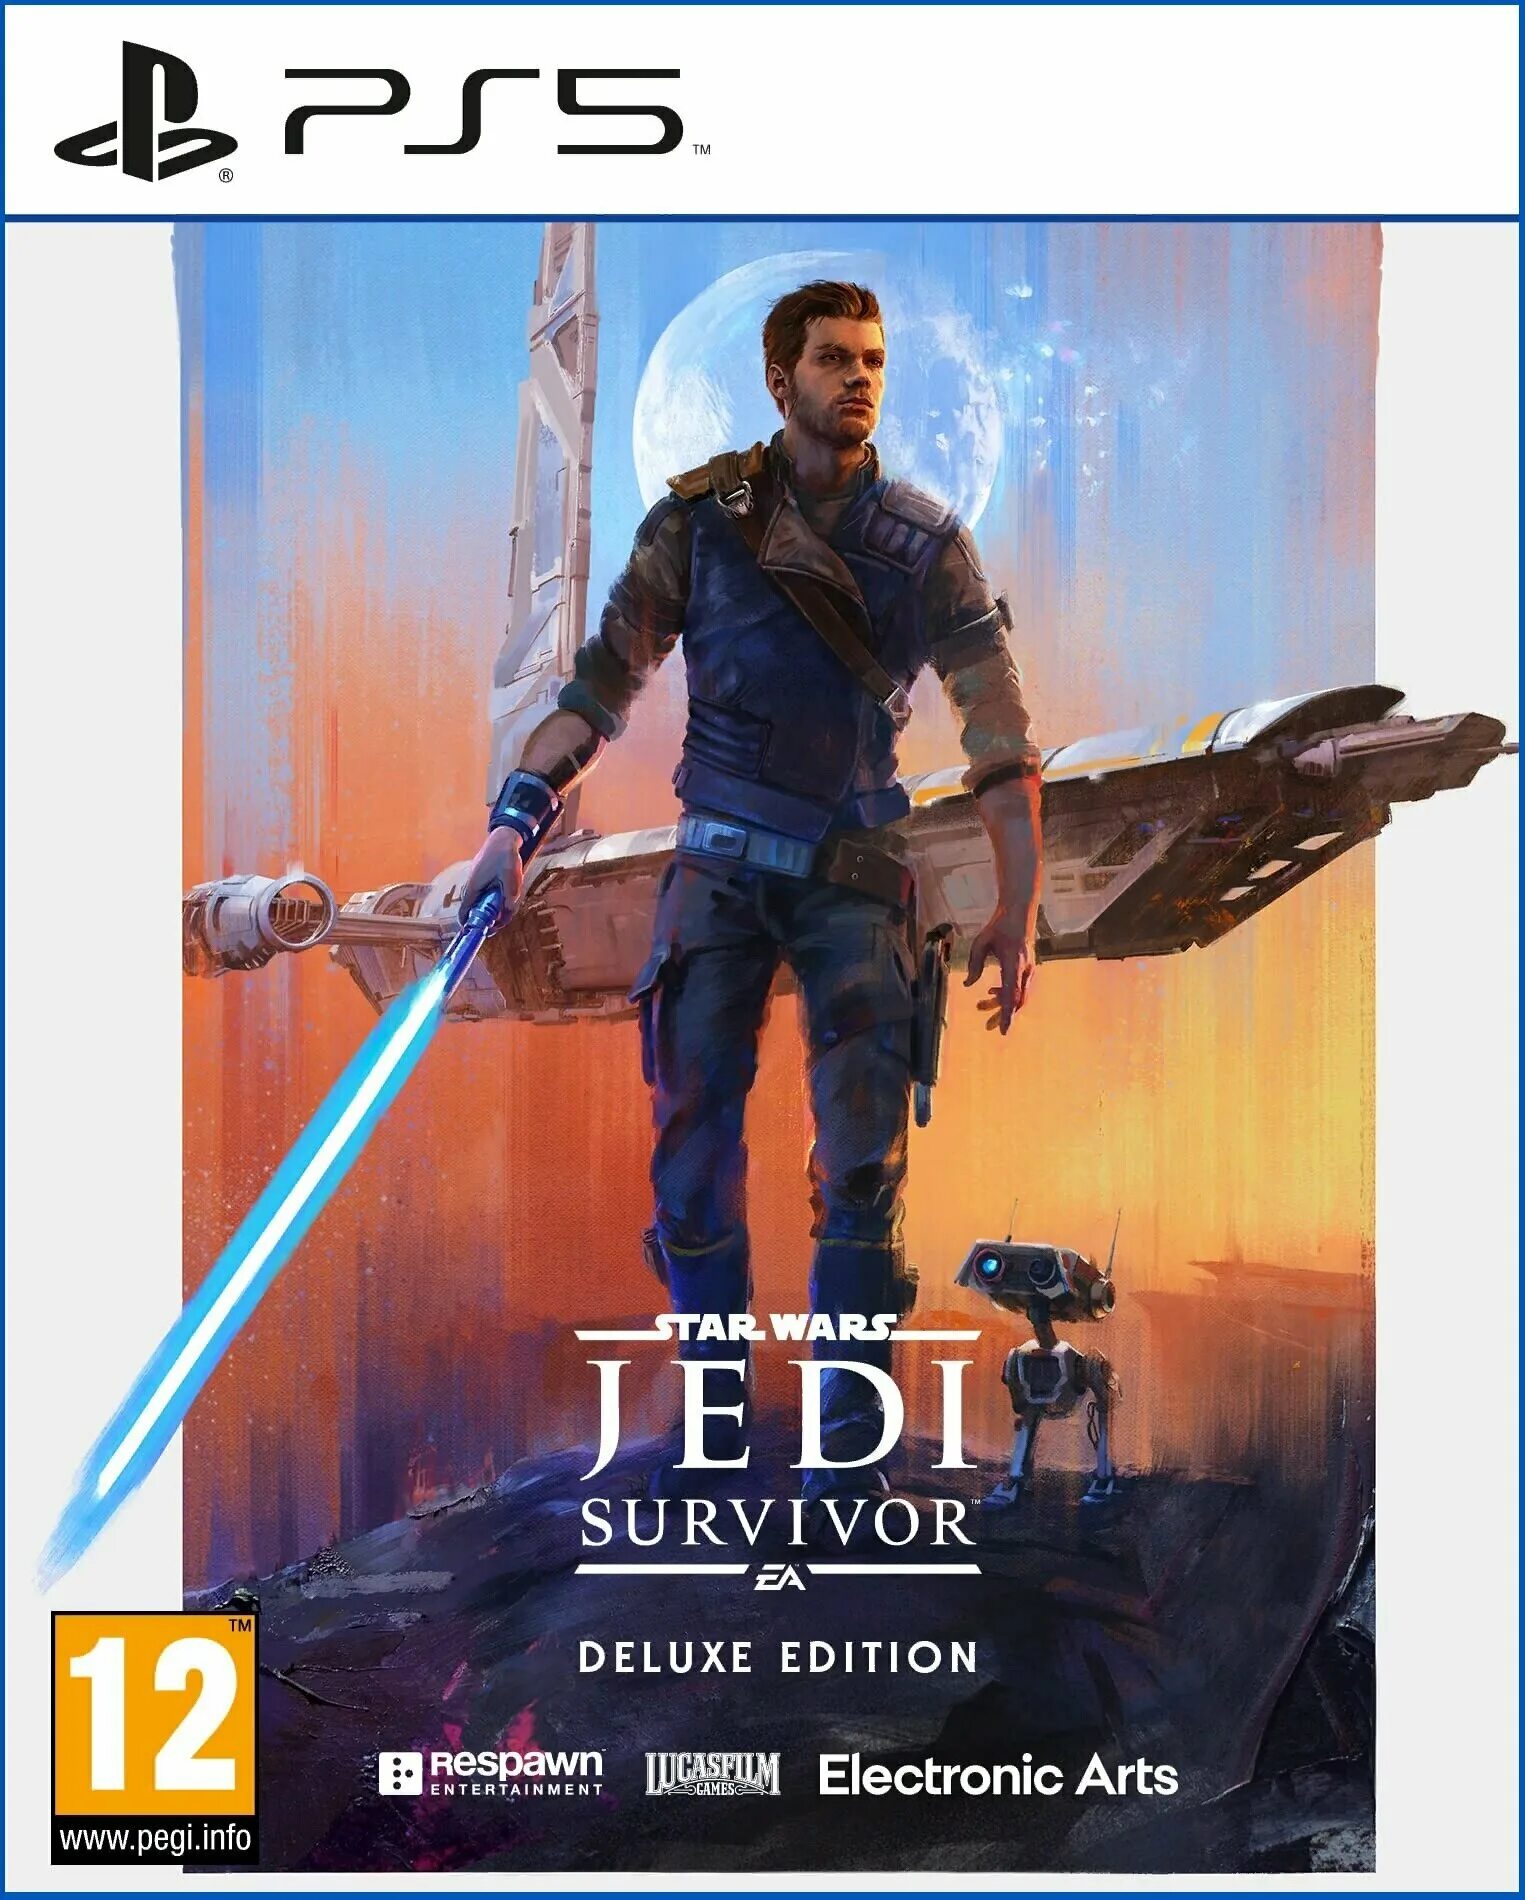 Star wars jedi survivor deluxe. Star Wars Jedi: Survivor Xbox. Jedi Survivor ps5. Star Wars Jedi: Survivor Deluxe Edition. Star Wars Jedi: Survivor обложка.